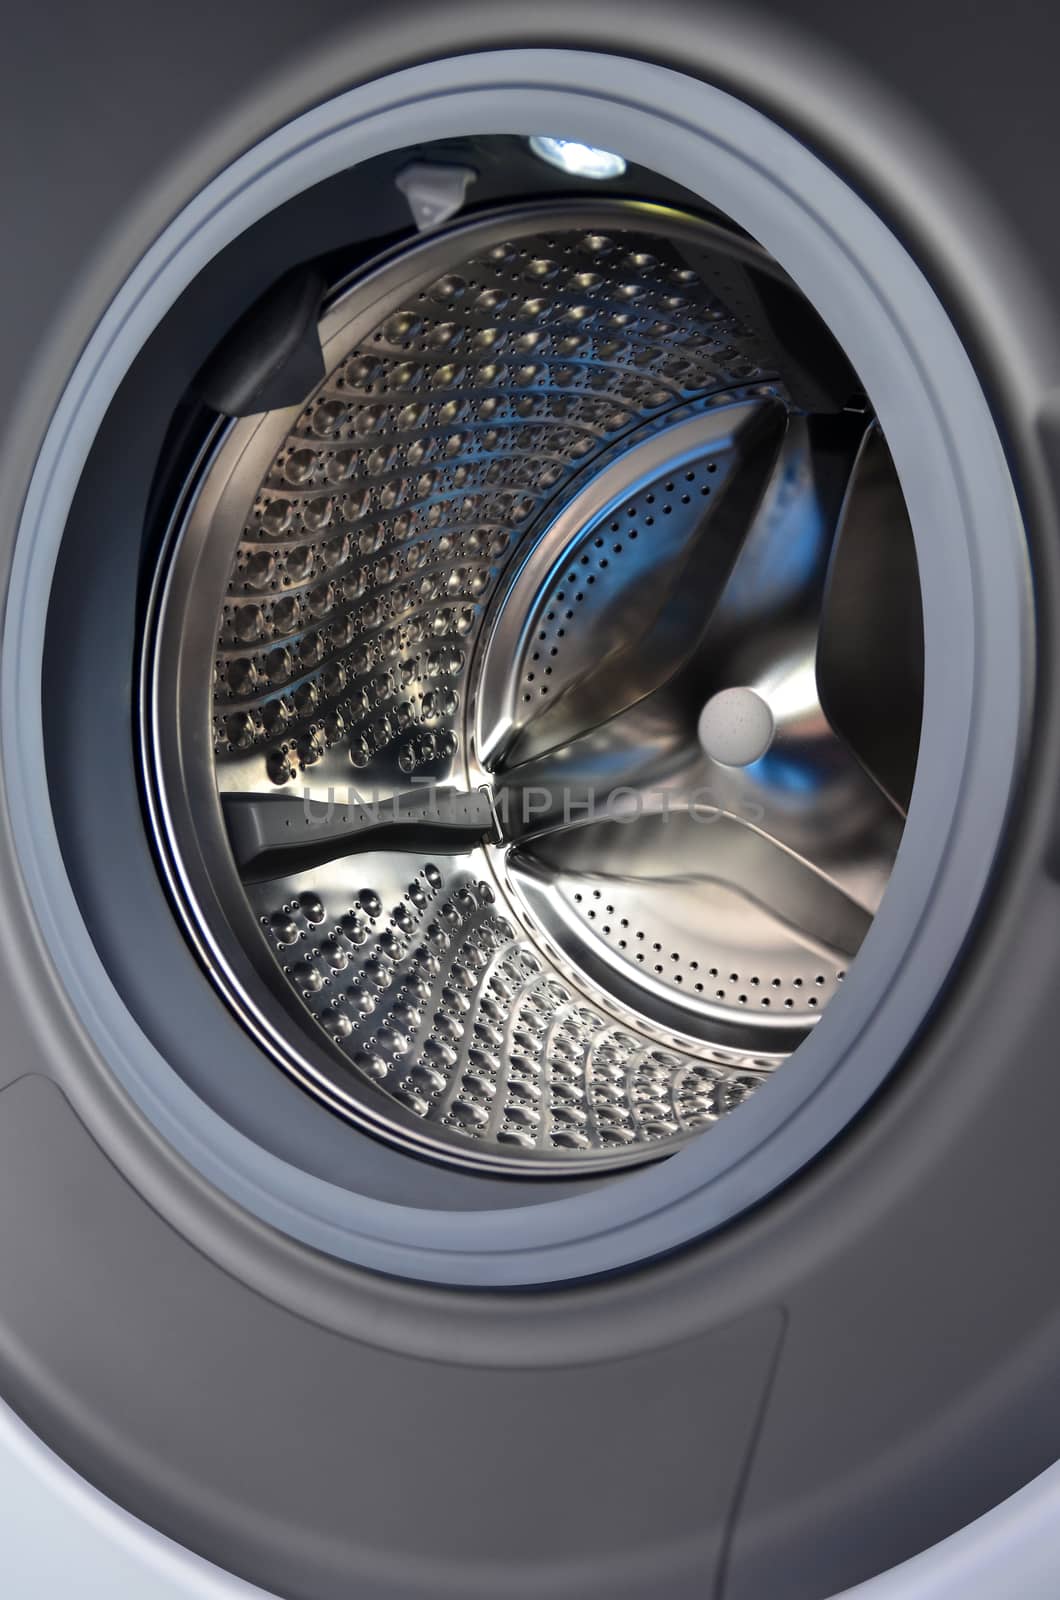 Washing machine drum by Vectorex